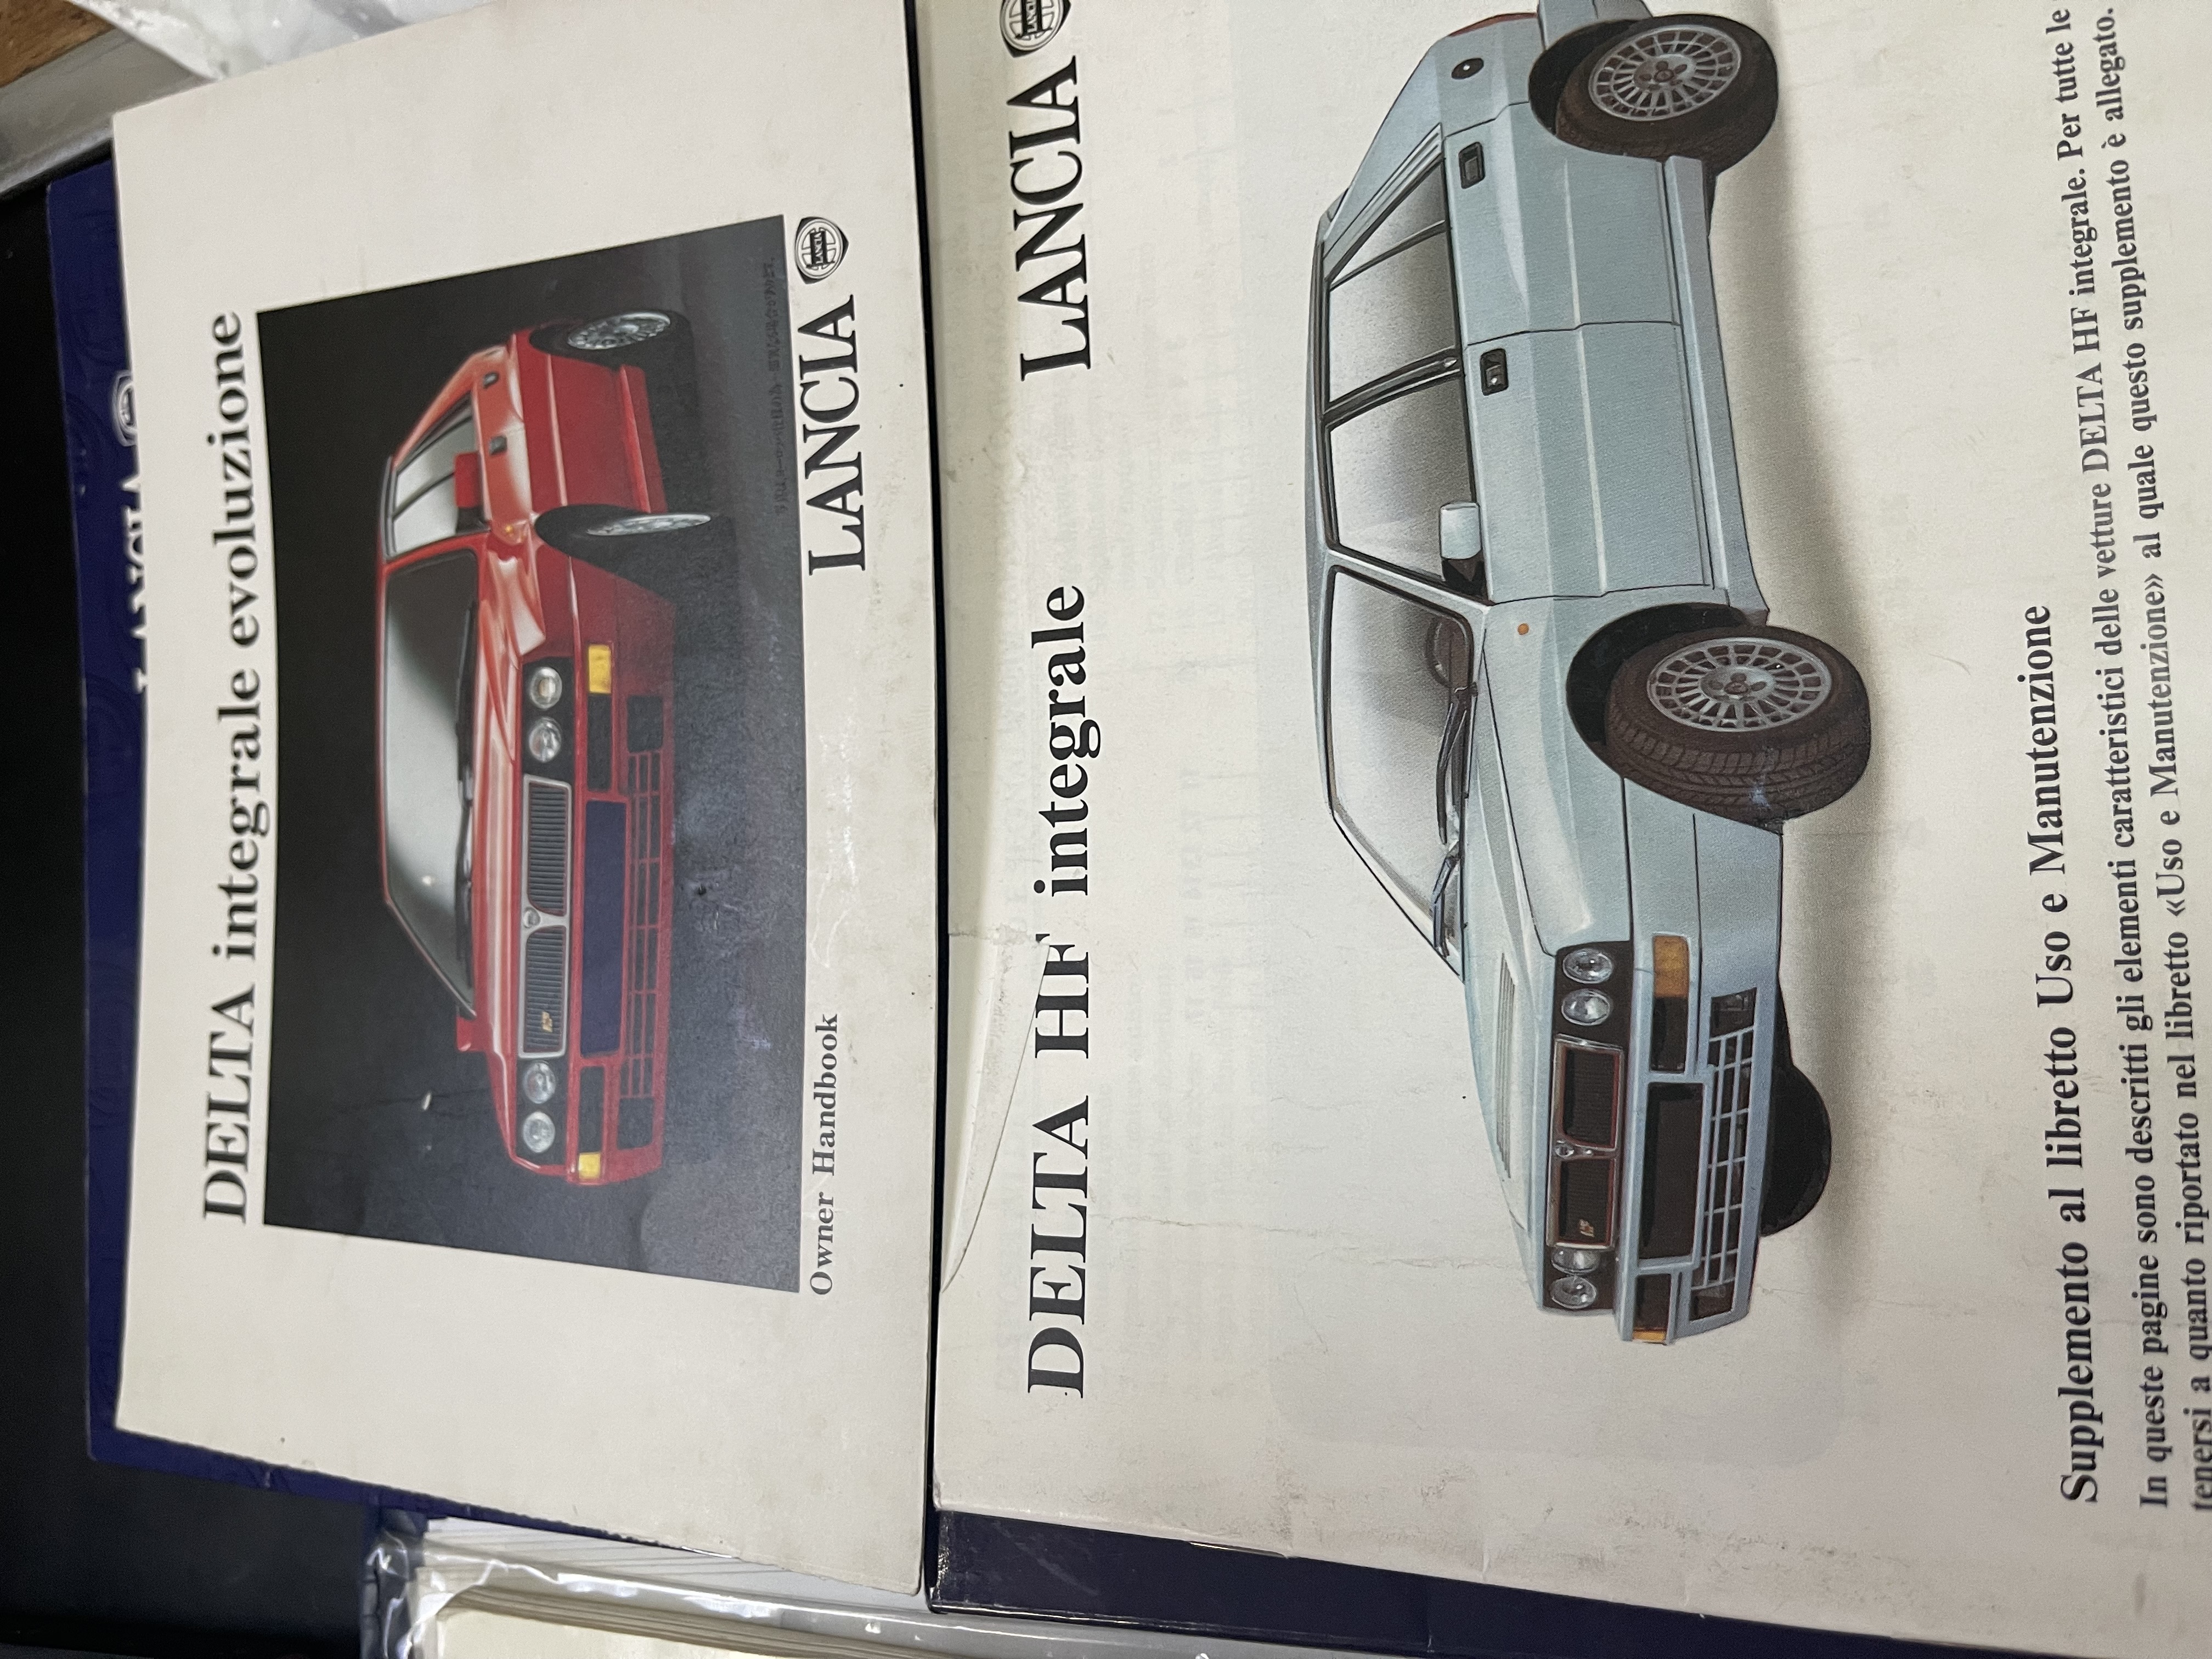 1993 Lancia Delta Integrale Evo 1